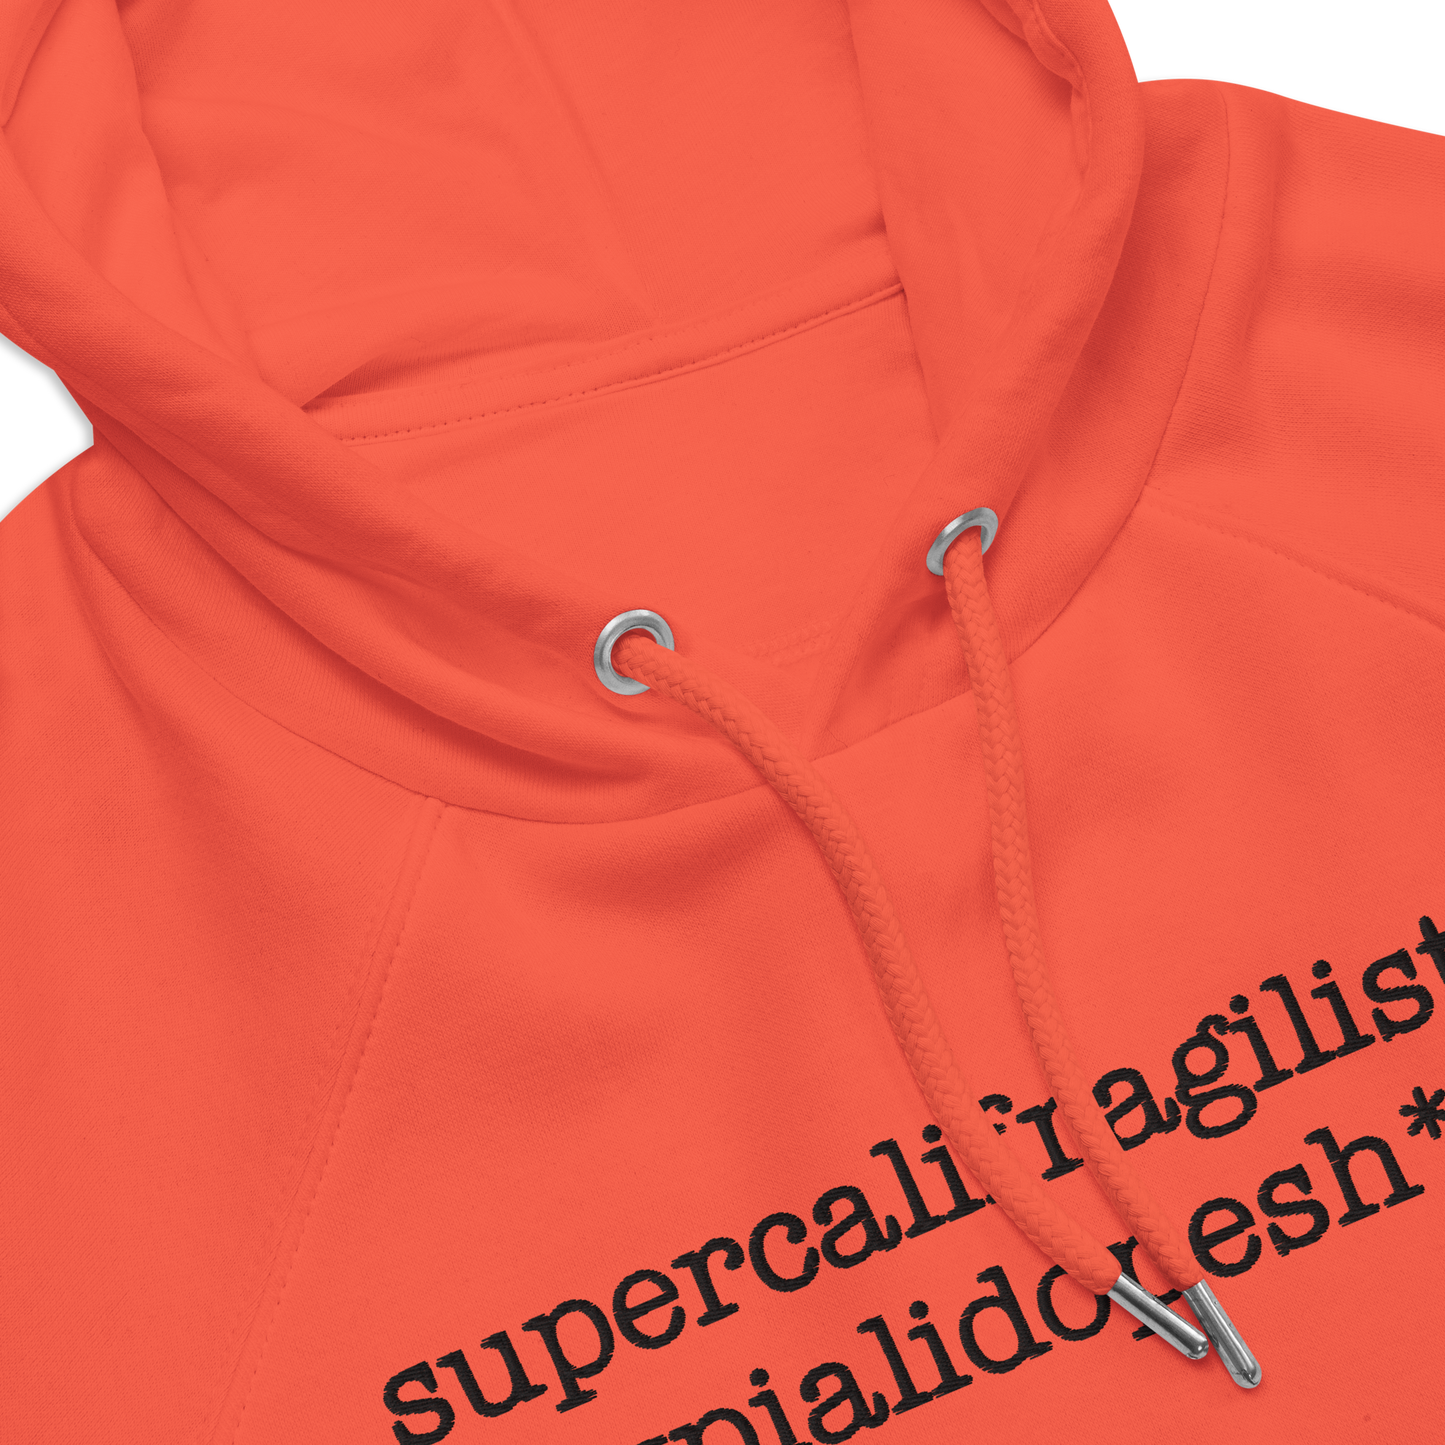 Supercalifragilisticexpialidopesh*t Unisex (Orange)